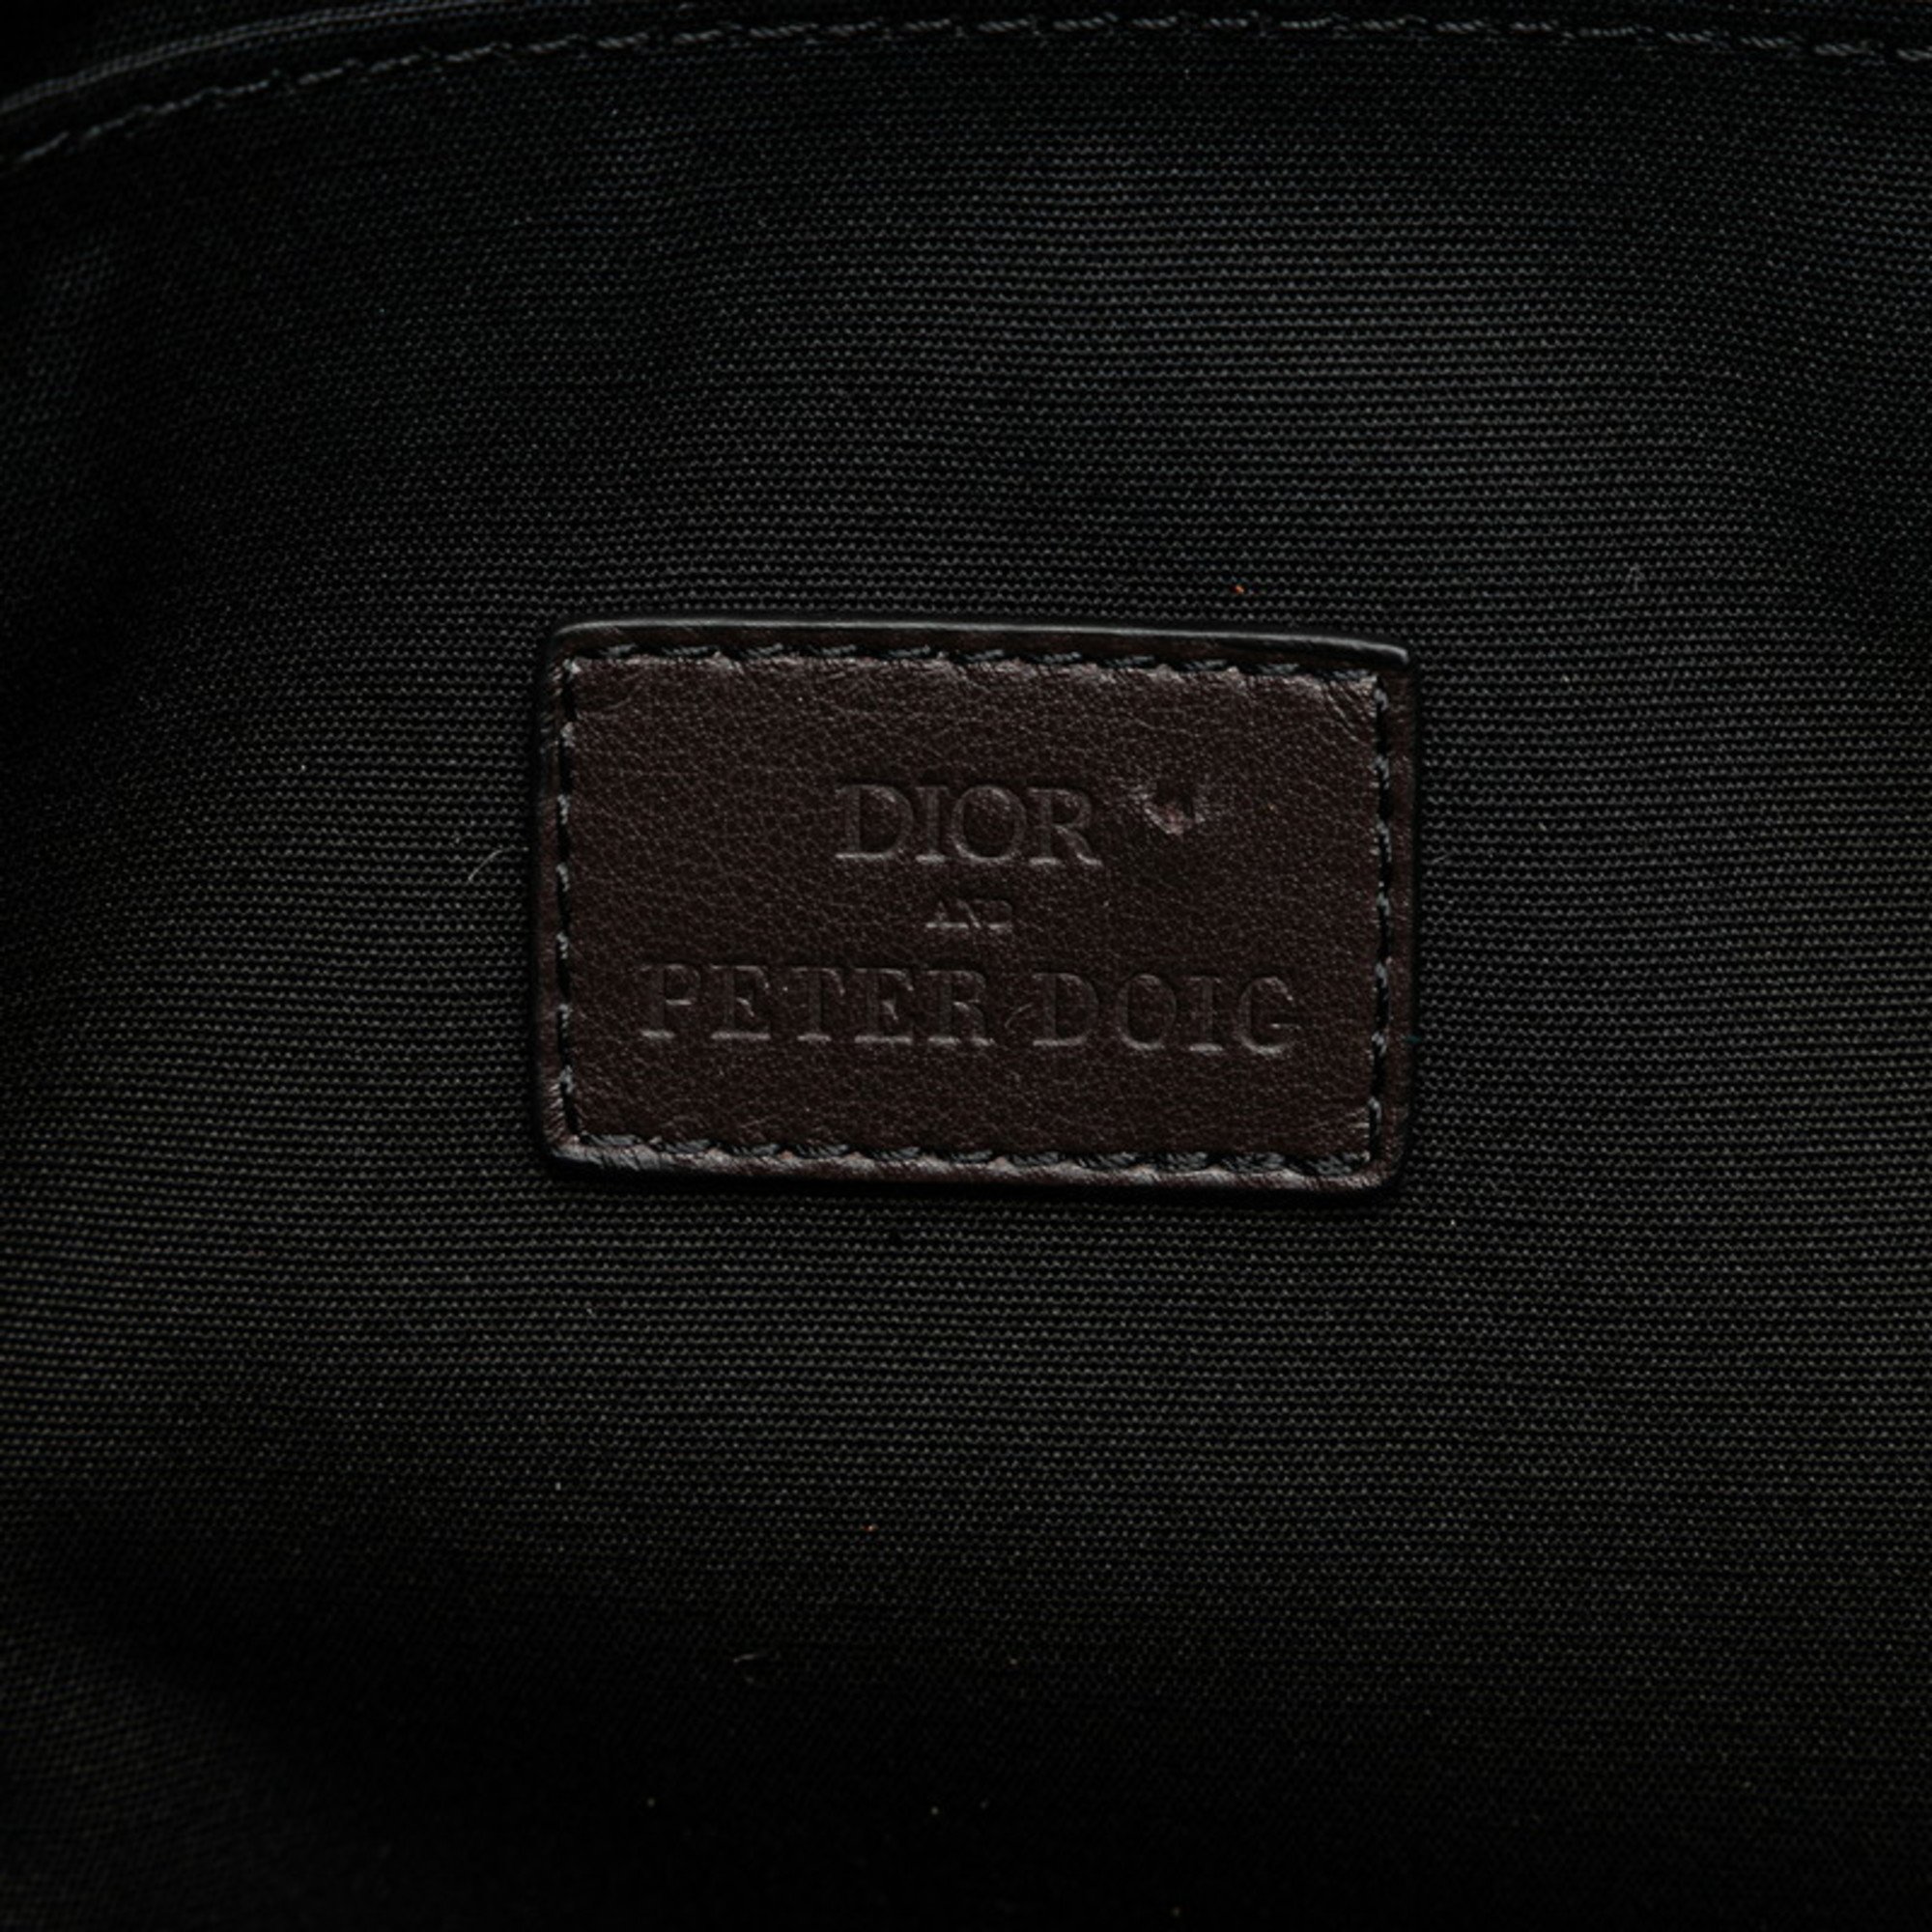 Christian Dior Dior x Peter Doig Saddle Soft Bag Painting Handbag Shoulder Multicolor Canvas Men's